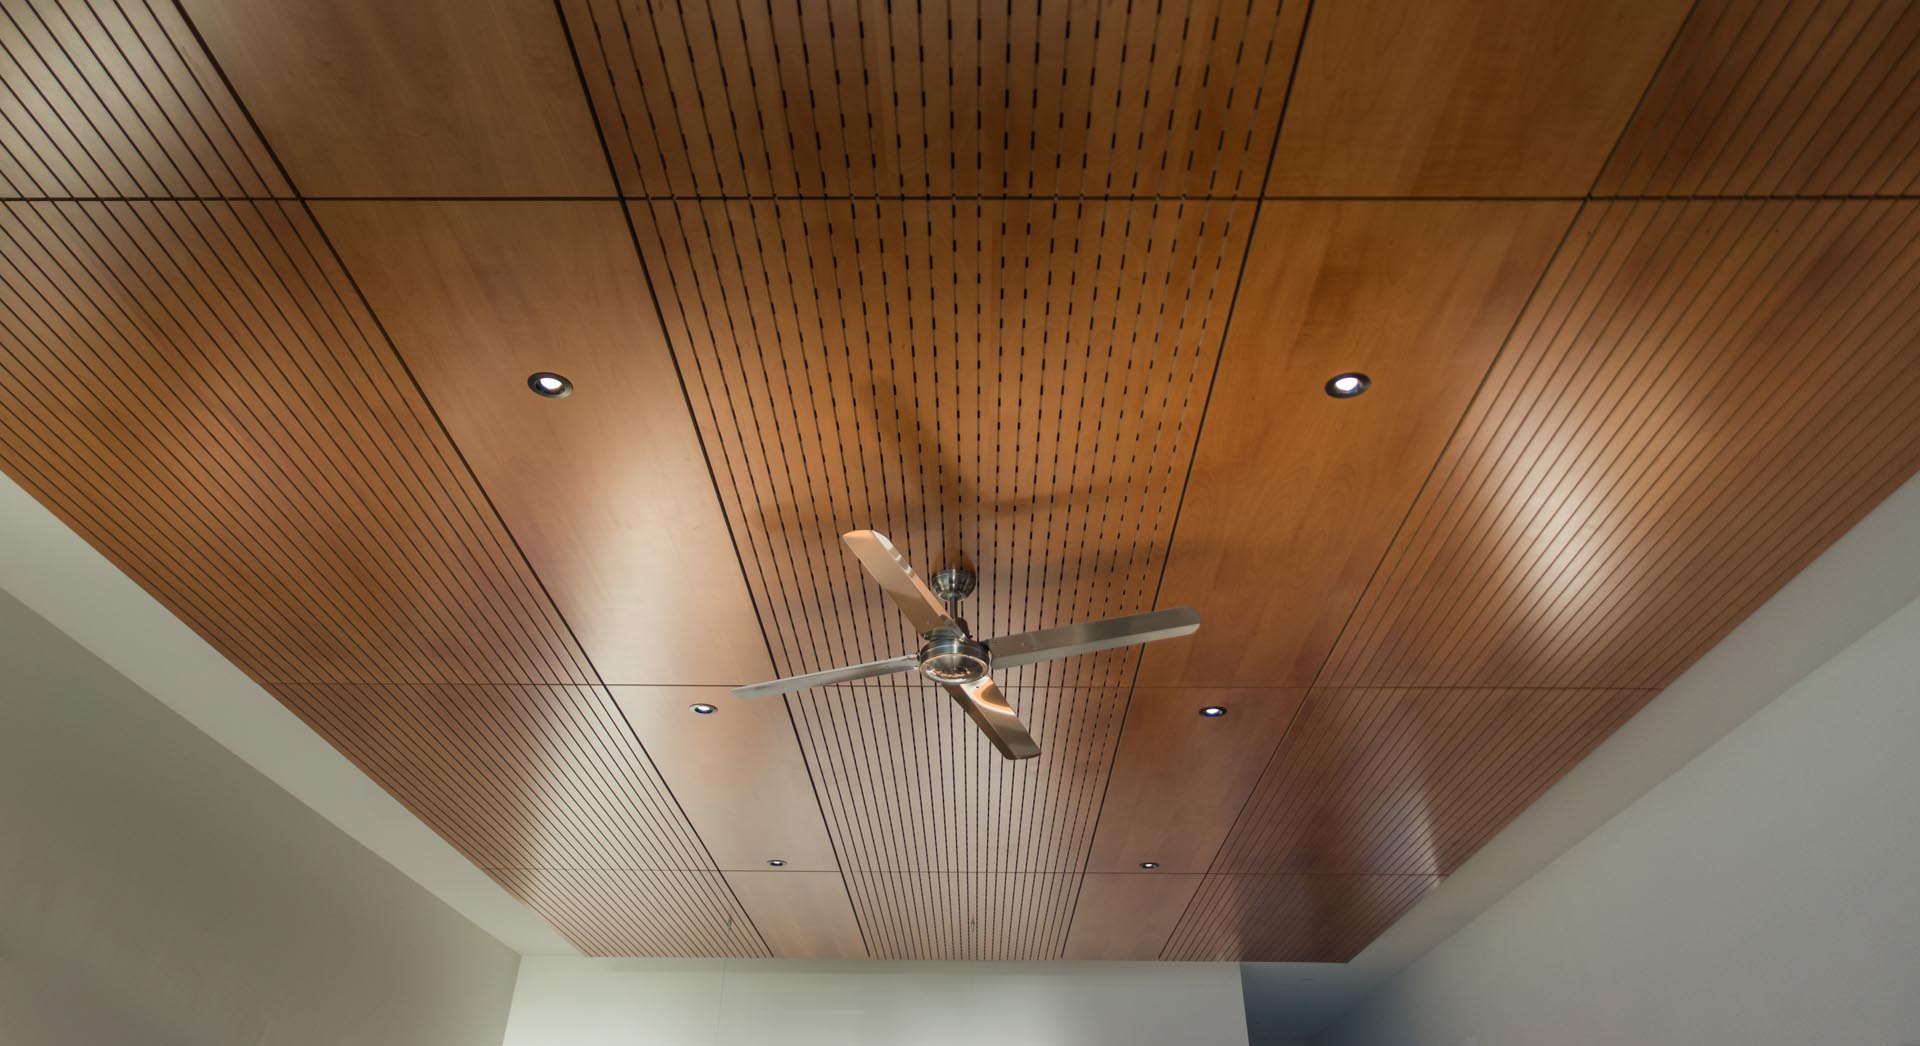 Интерьер открытой планировки с деревянным акцентом на потолке и скрытой подсветкой.